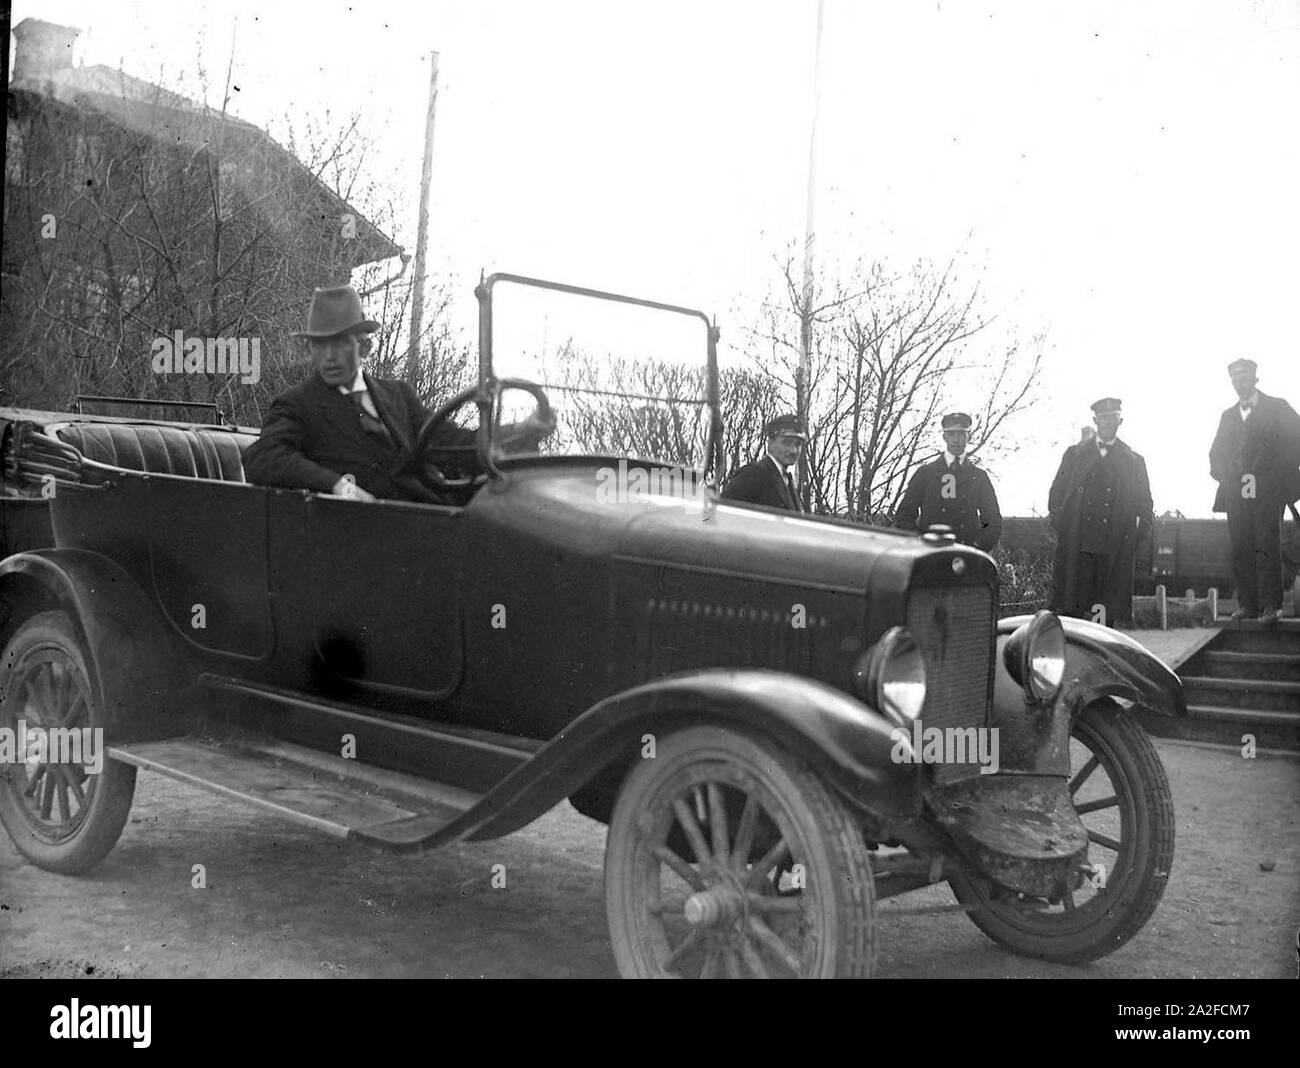 En uomo sitter i en bil järnväg invid. Fyra uniformsklädda män ho bakgrunden - Foto Stock